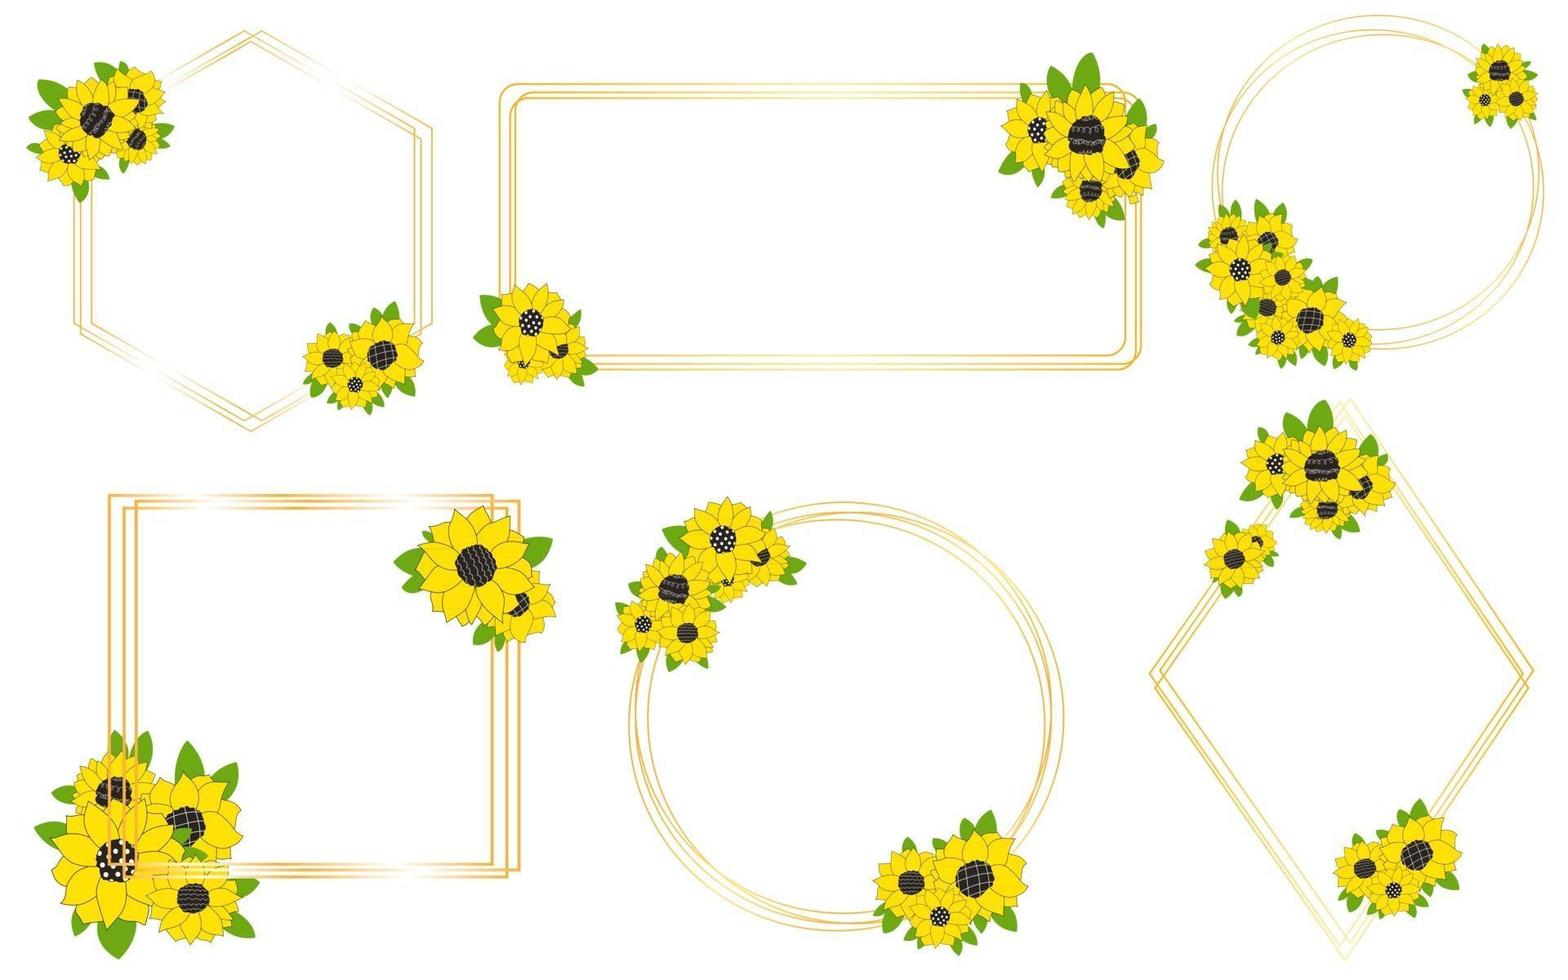 gouden rechthoek vierkante cirkel ruit frame met zonnebloemen bloemen voor een huwelijksuitnodiging gelukkige verjaardag lijn vectorillustratie van doodles collection vector